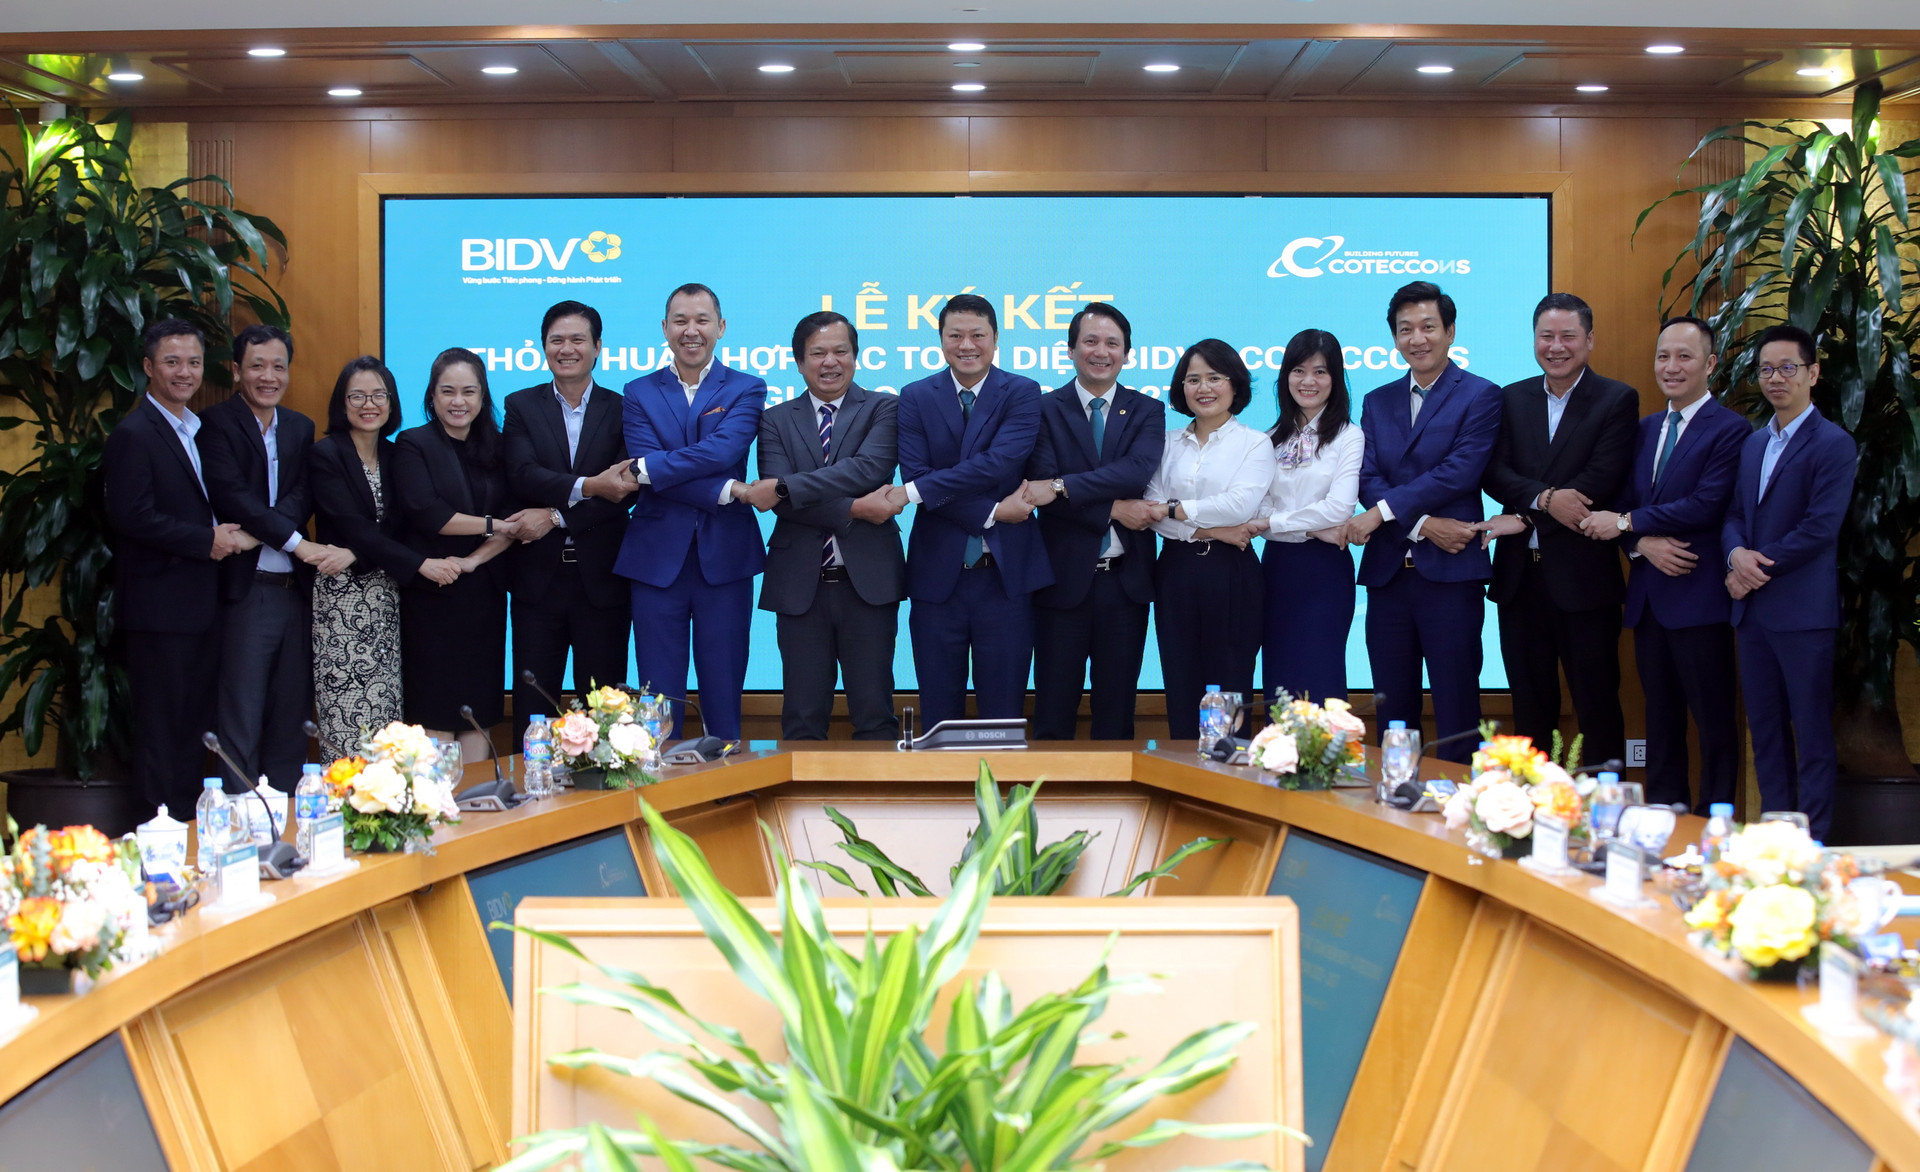 BIDV và Coteccons ký kết thỏa thuận hợp tác toàn diện - Ảnh 1.